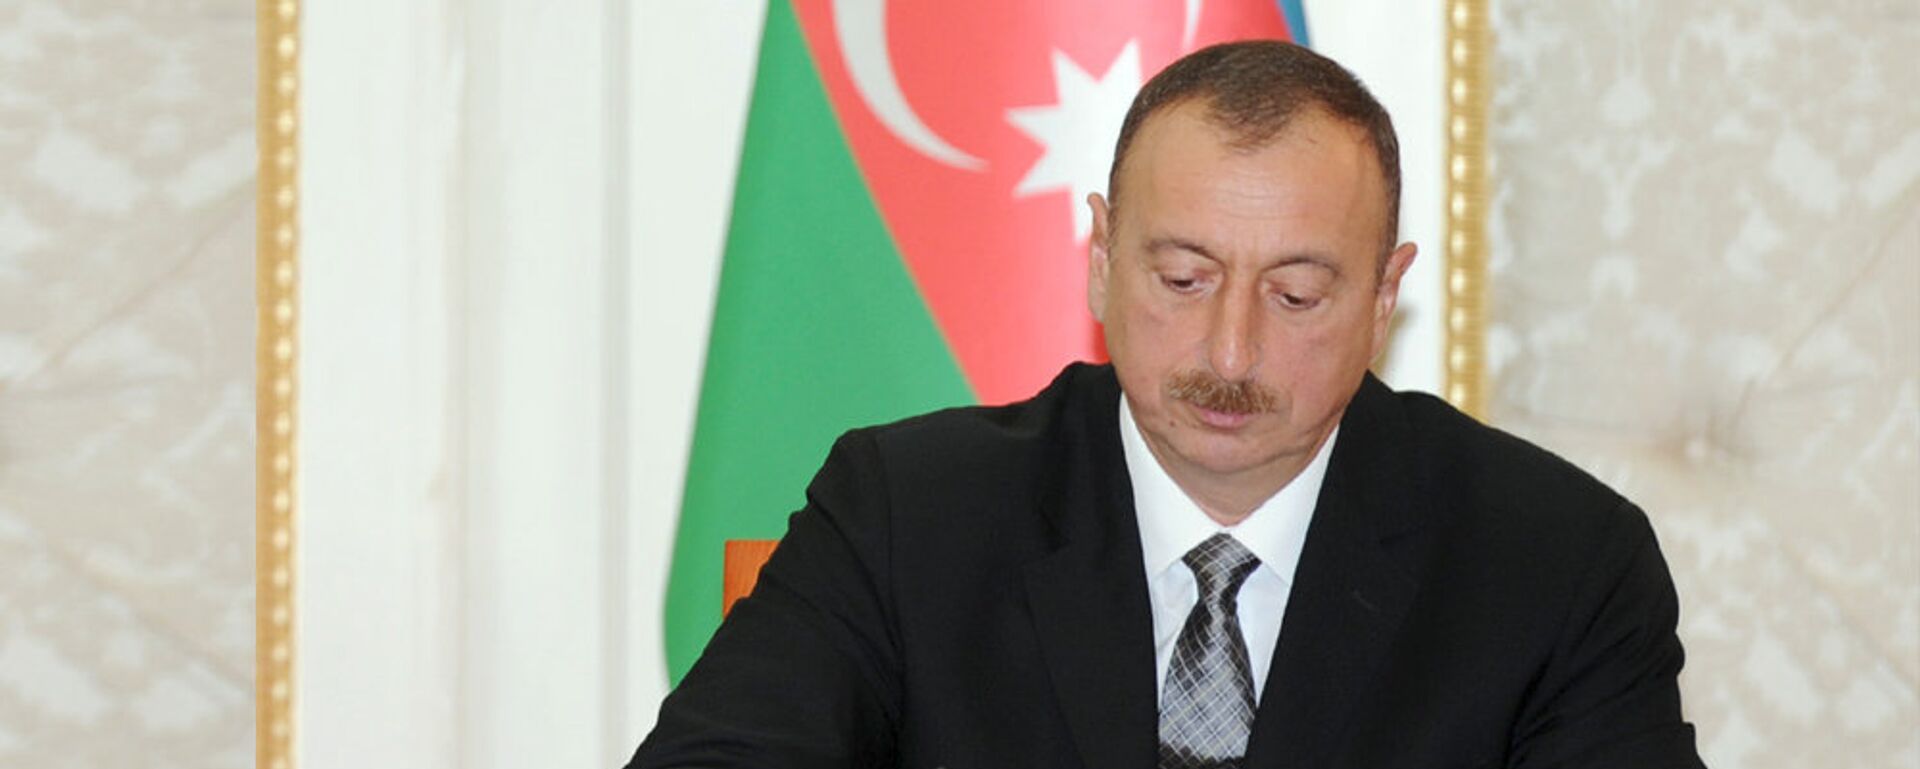 Azərbaycan Respublikasının Prezidenti İlham Əliyev - Sputnik Азербайджан, 1920, 06.04.2021